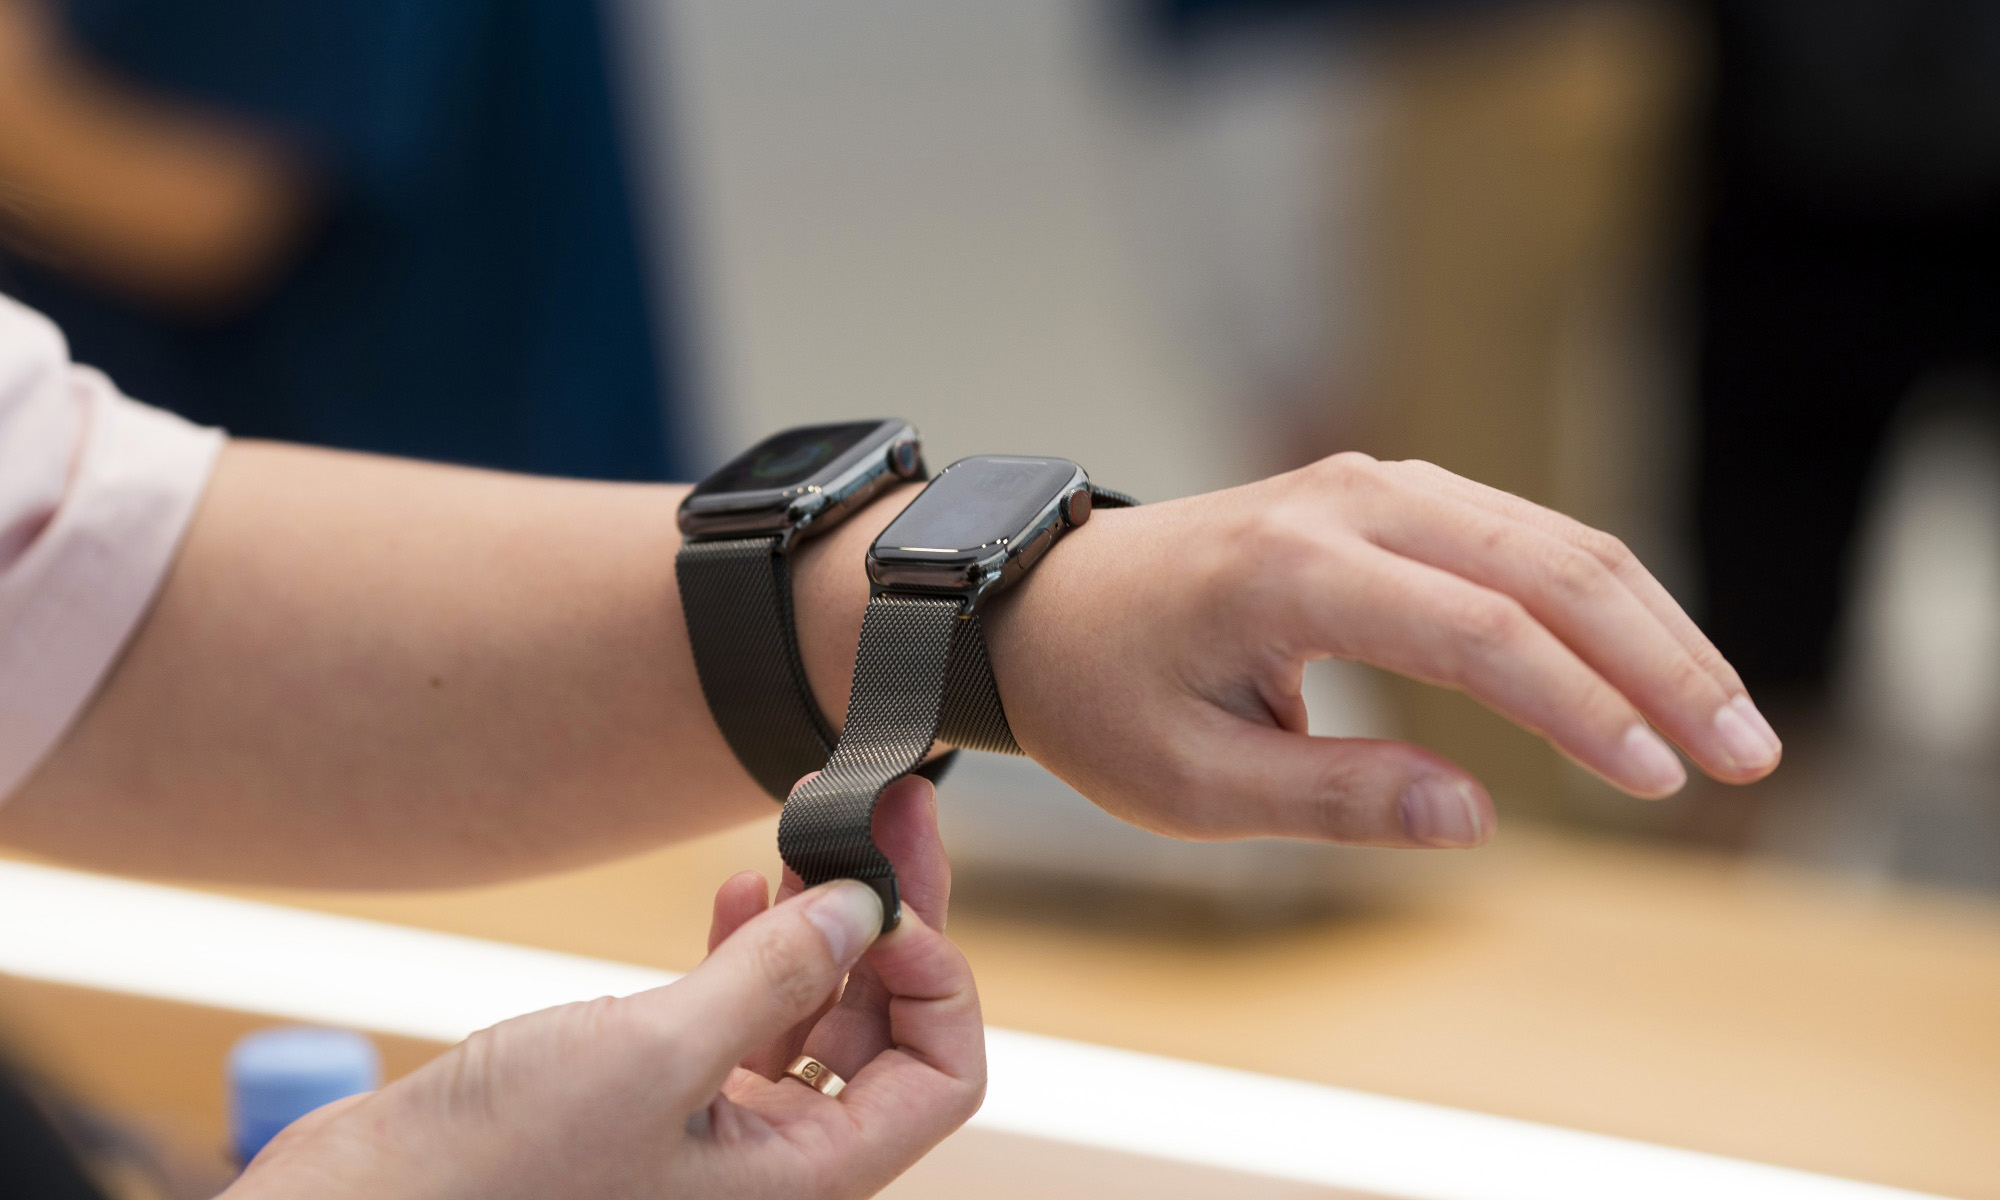 全新 Apple Watch 系列将加入 Pro 产品线